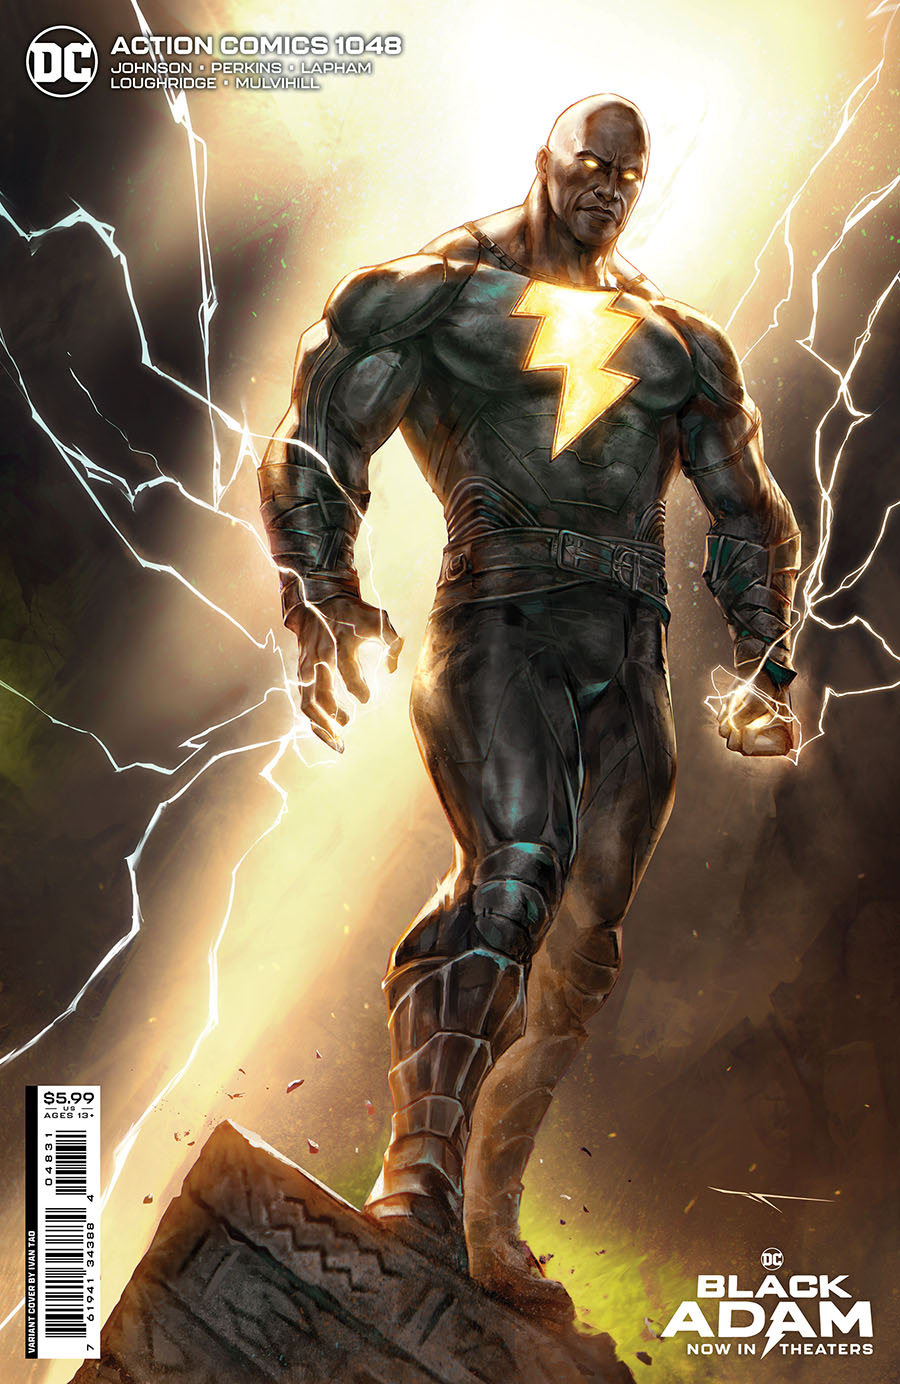 Action Comics Vol 2 #1048 Cover C Variant Ivan Tao Black Adam Movie Card Stock Cover (Kal-El Returns Part 3)